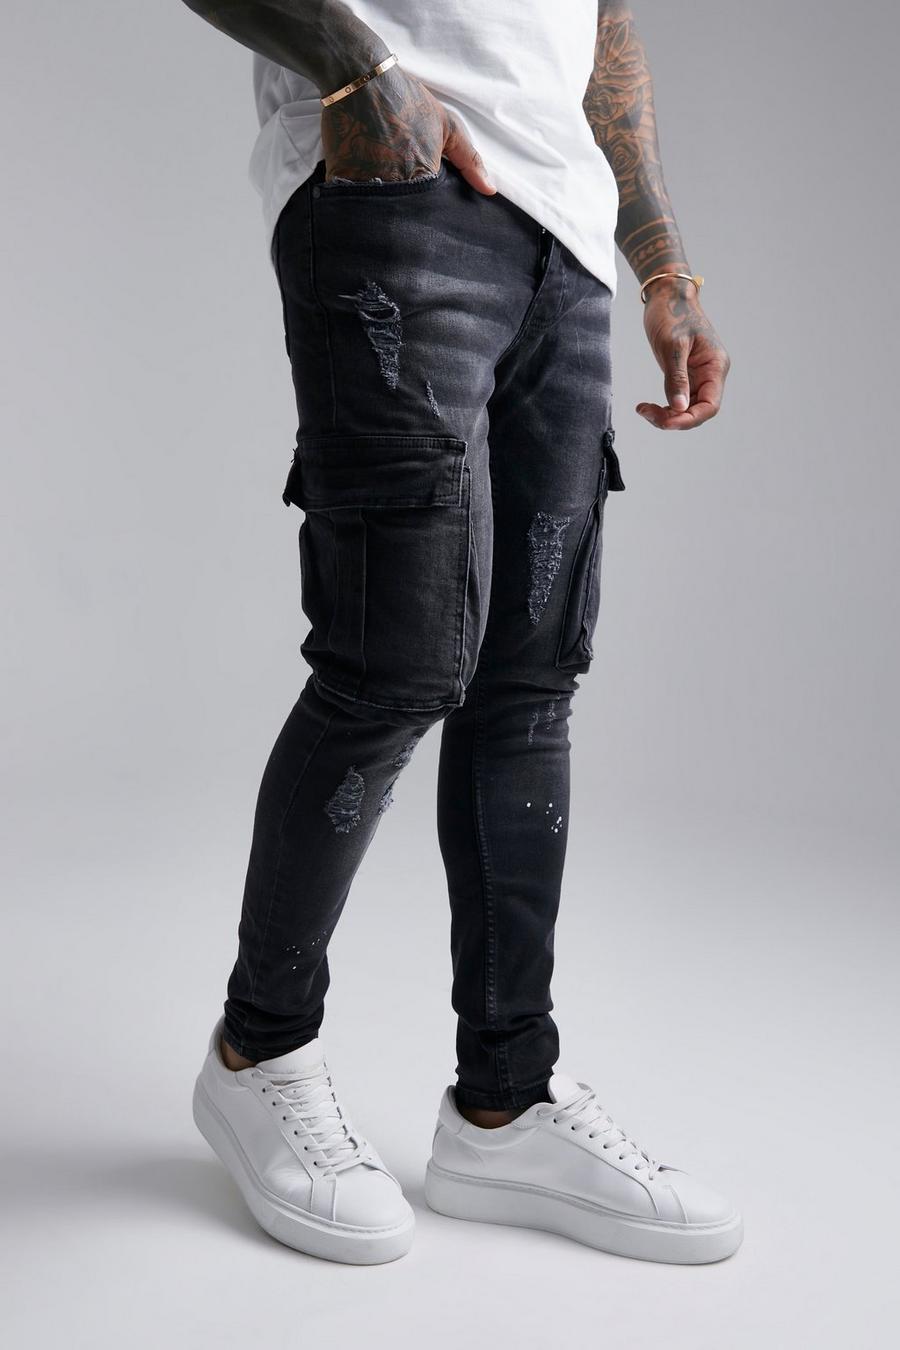 שחור דהוי ג'ינס דגמ'ח סופר סקיני עם כתמי התזת צבע